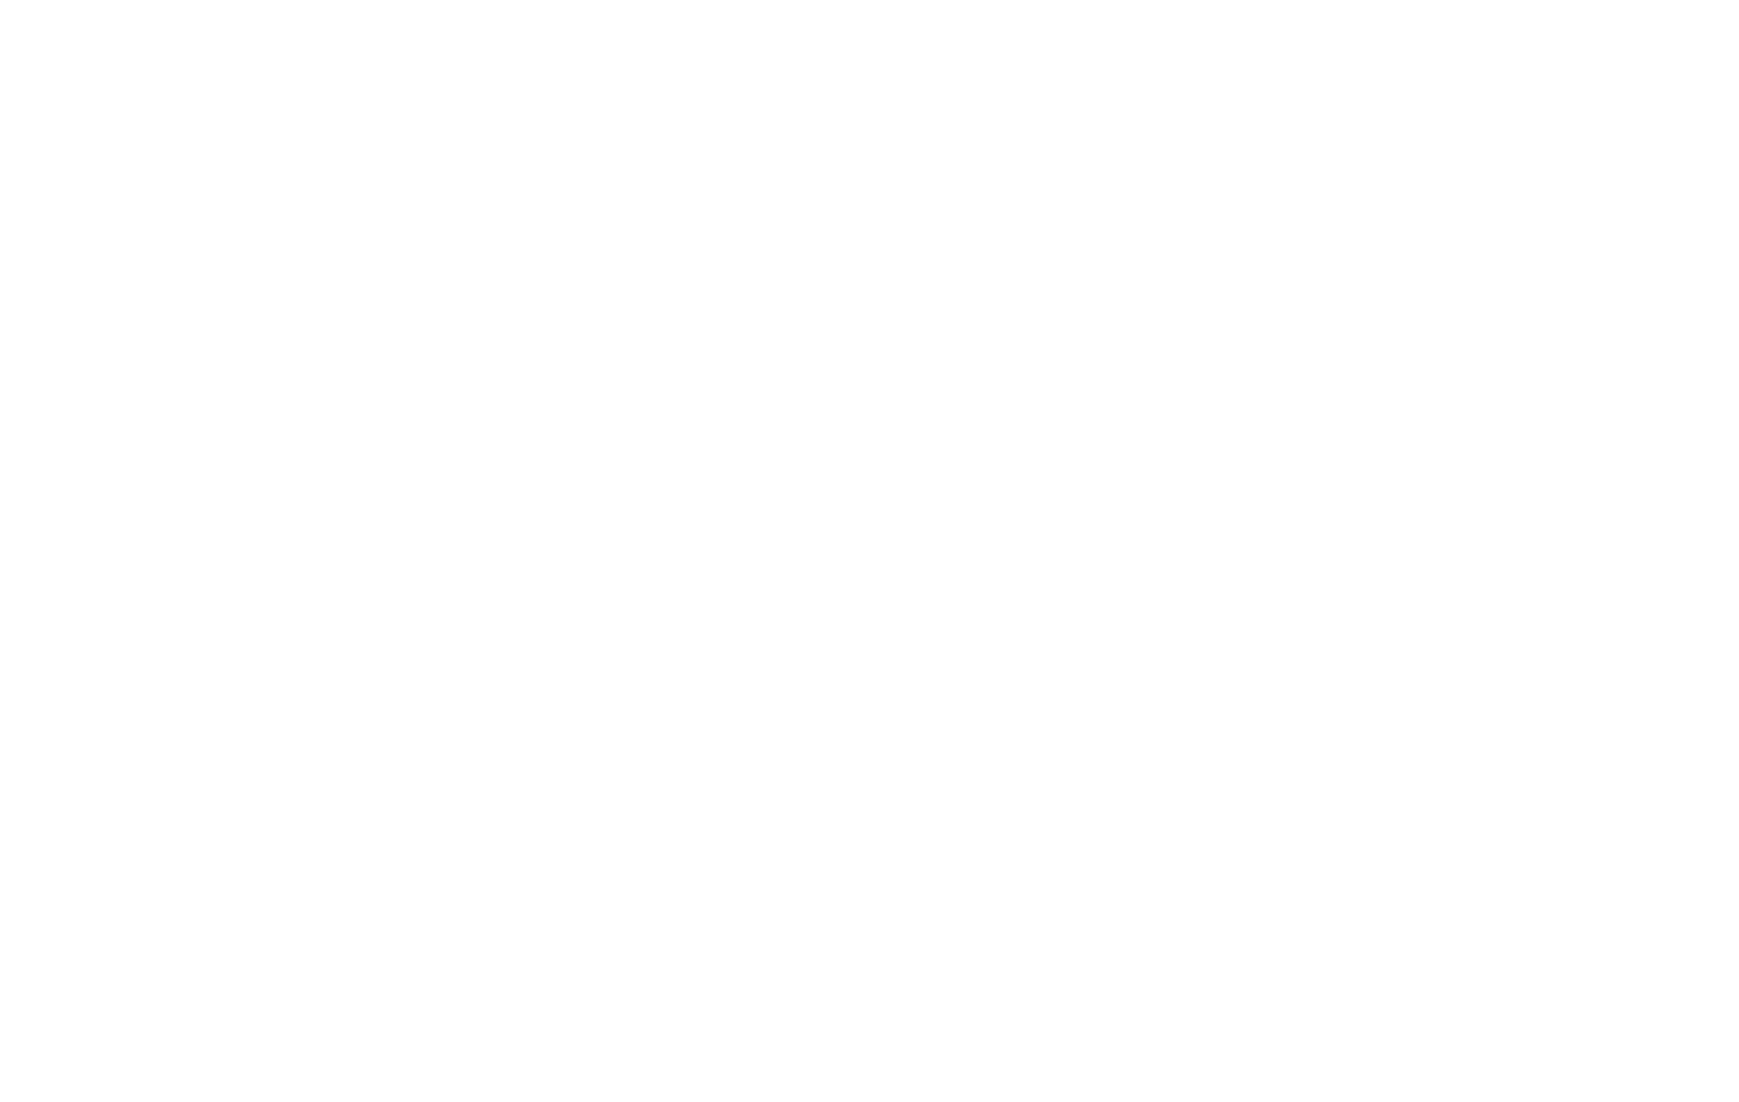 Flex with revolex™ logo